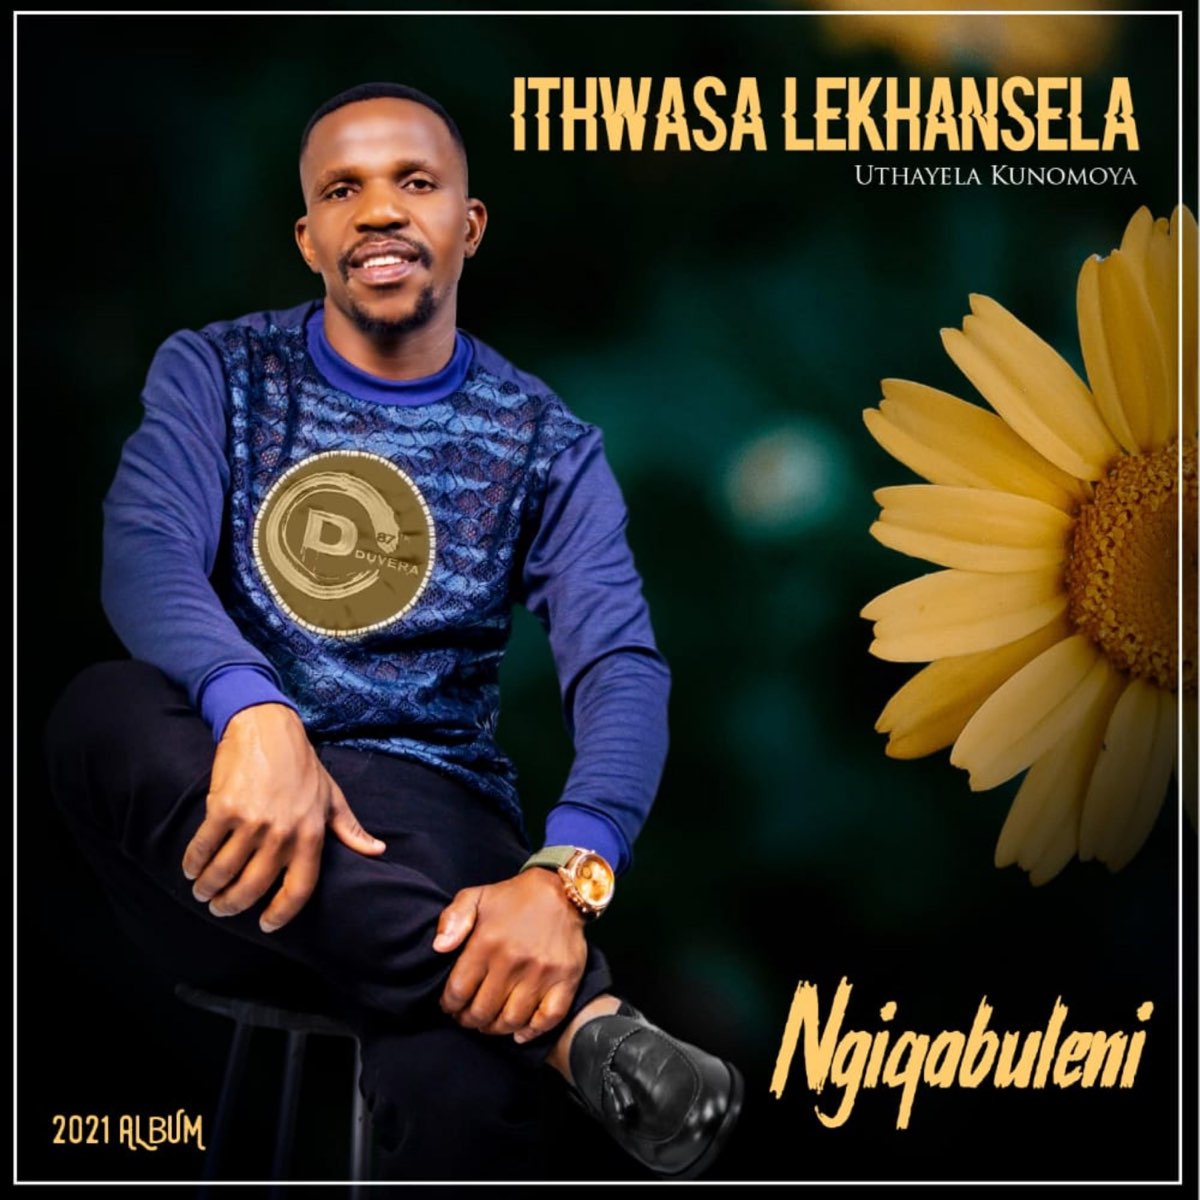 Ngiqabuleni - Album by Ithwasa Lekhansela - Apple Music